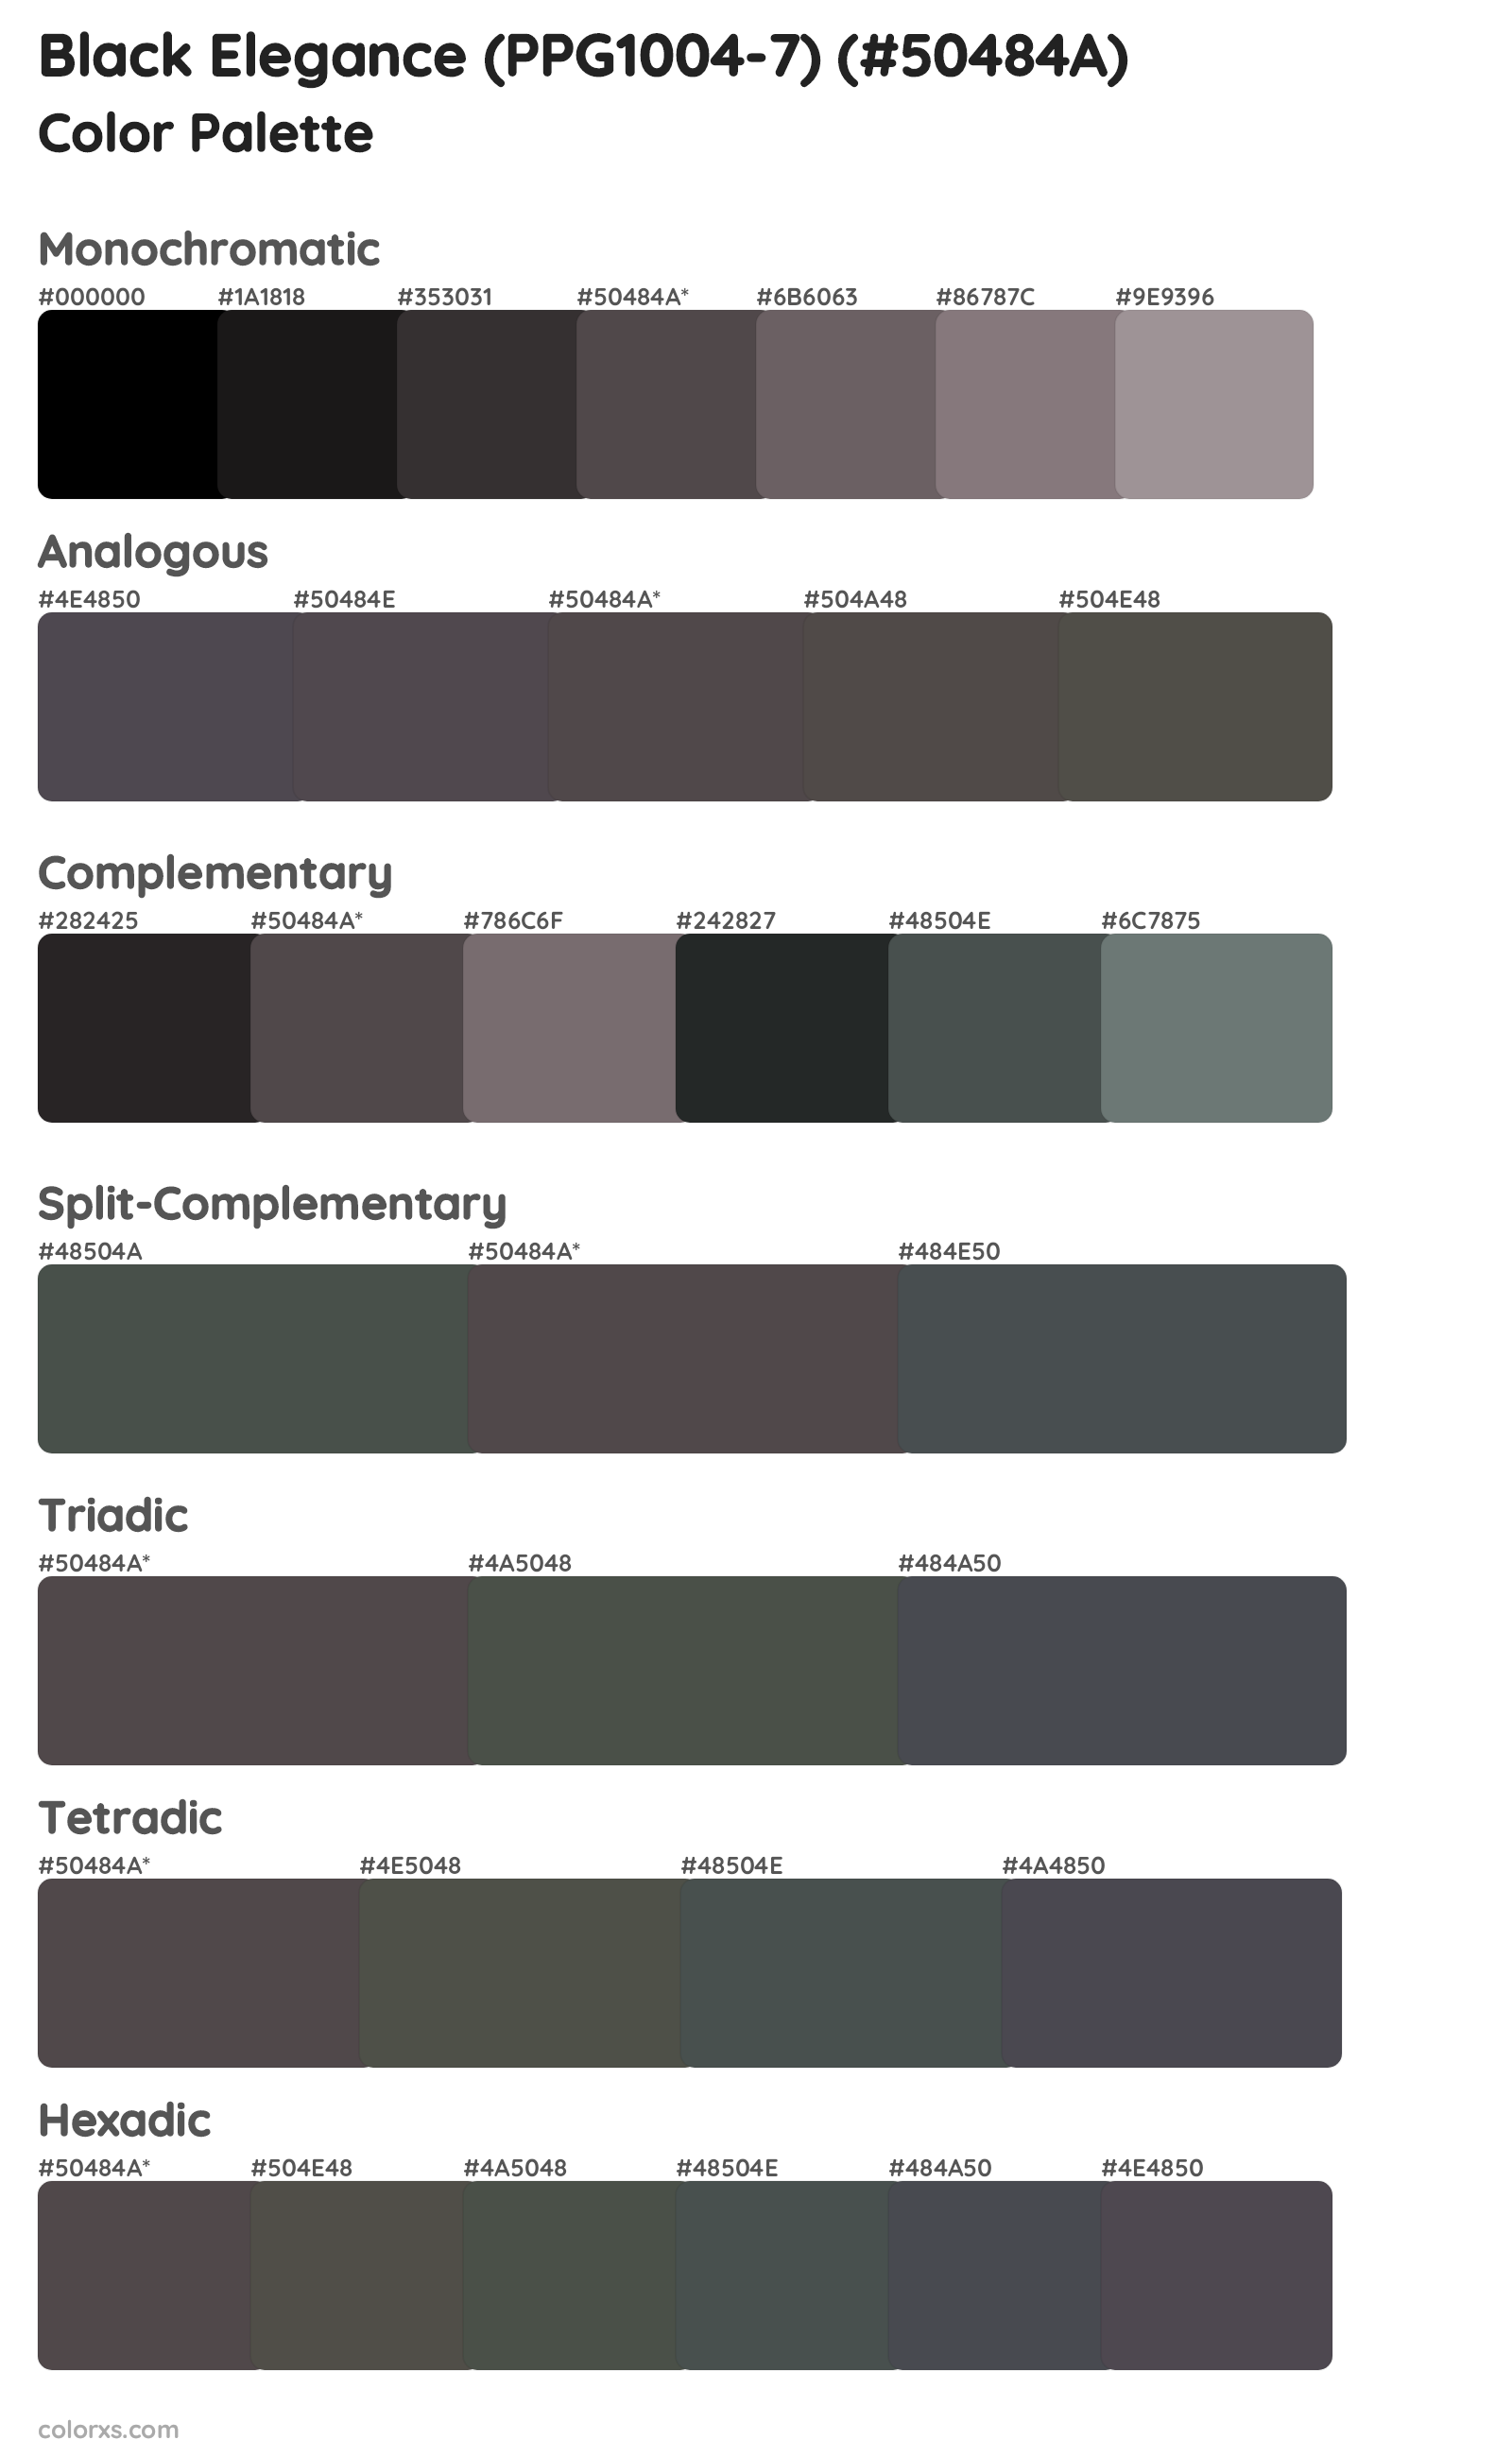 Black Elegance (PPG1004-7) Color Scheme Palettes